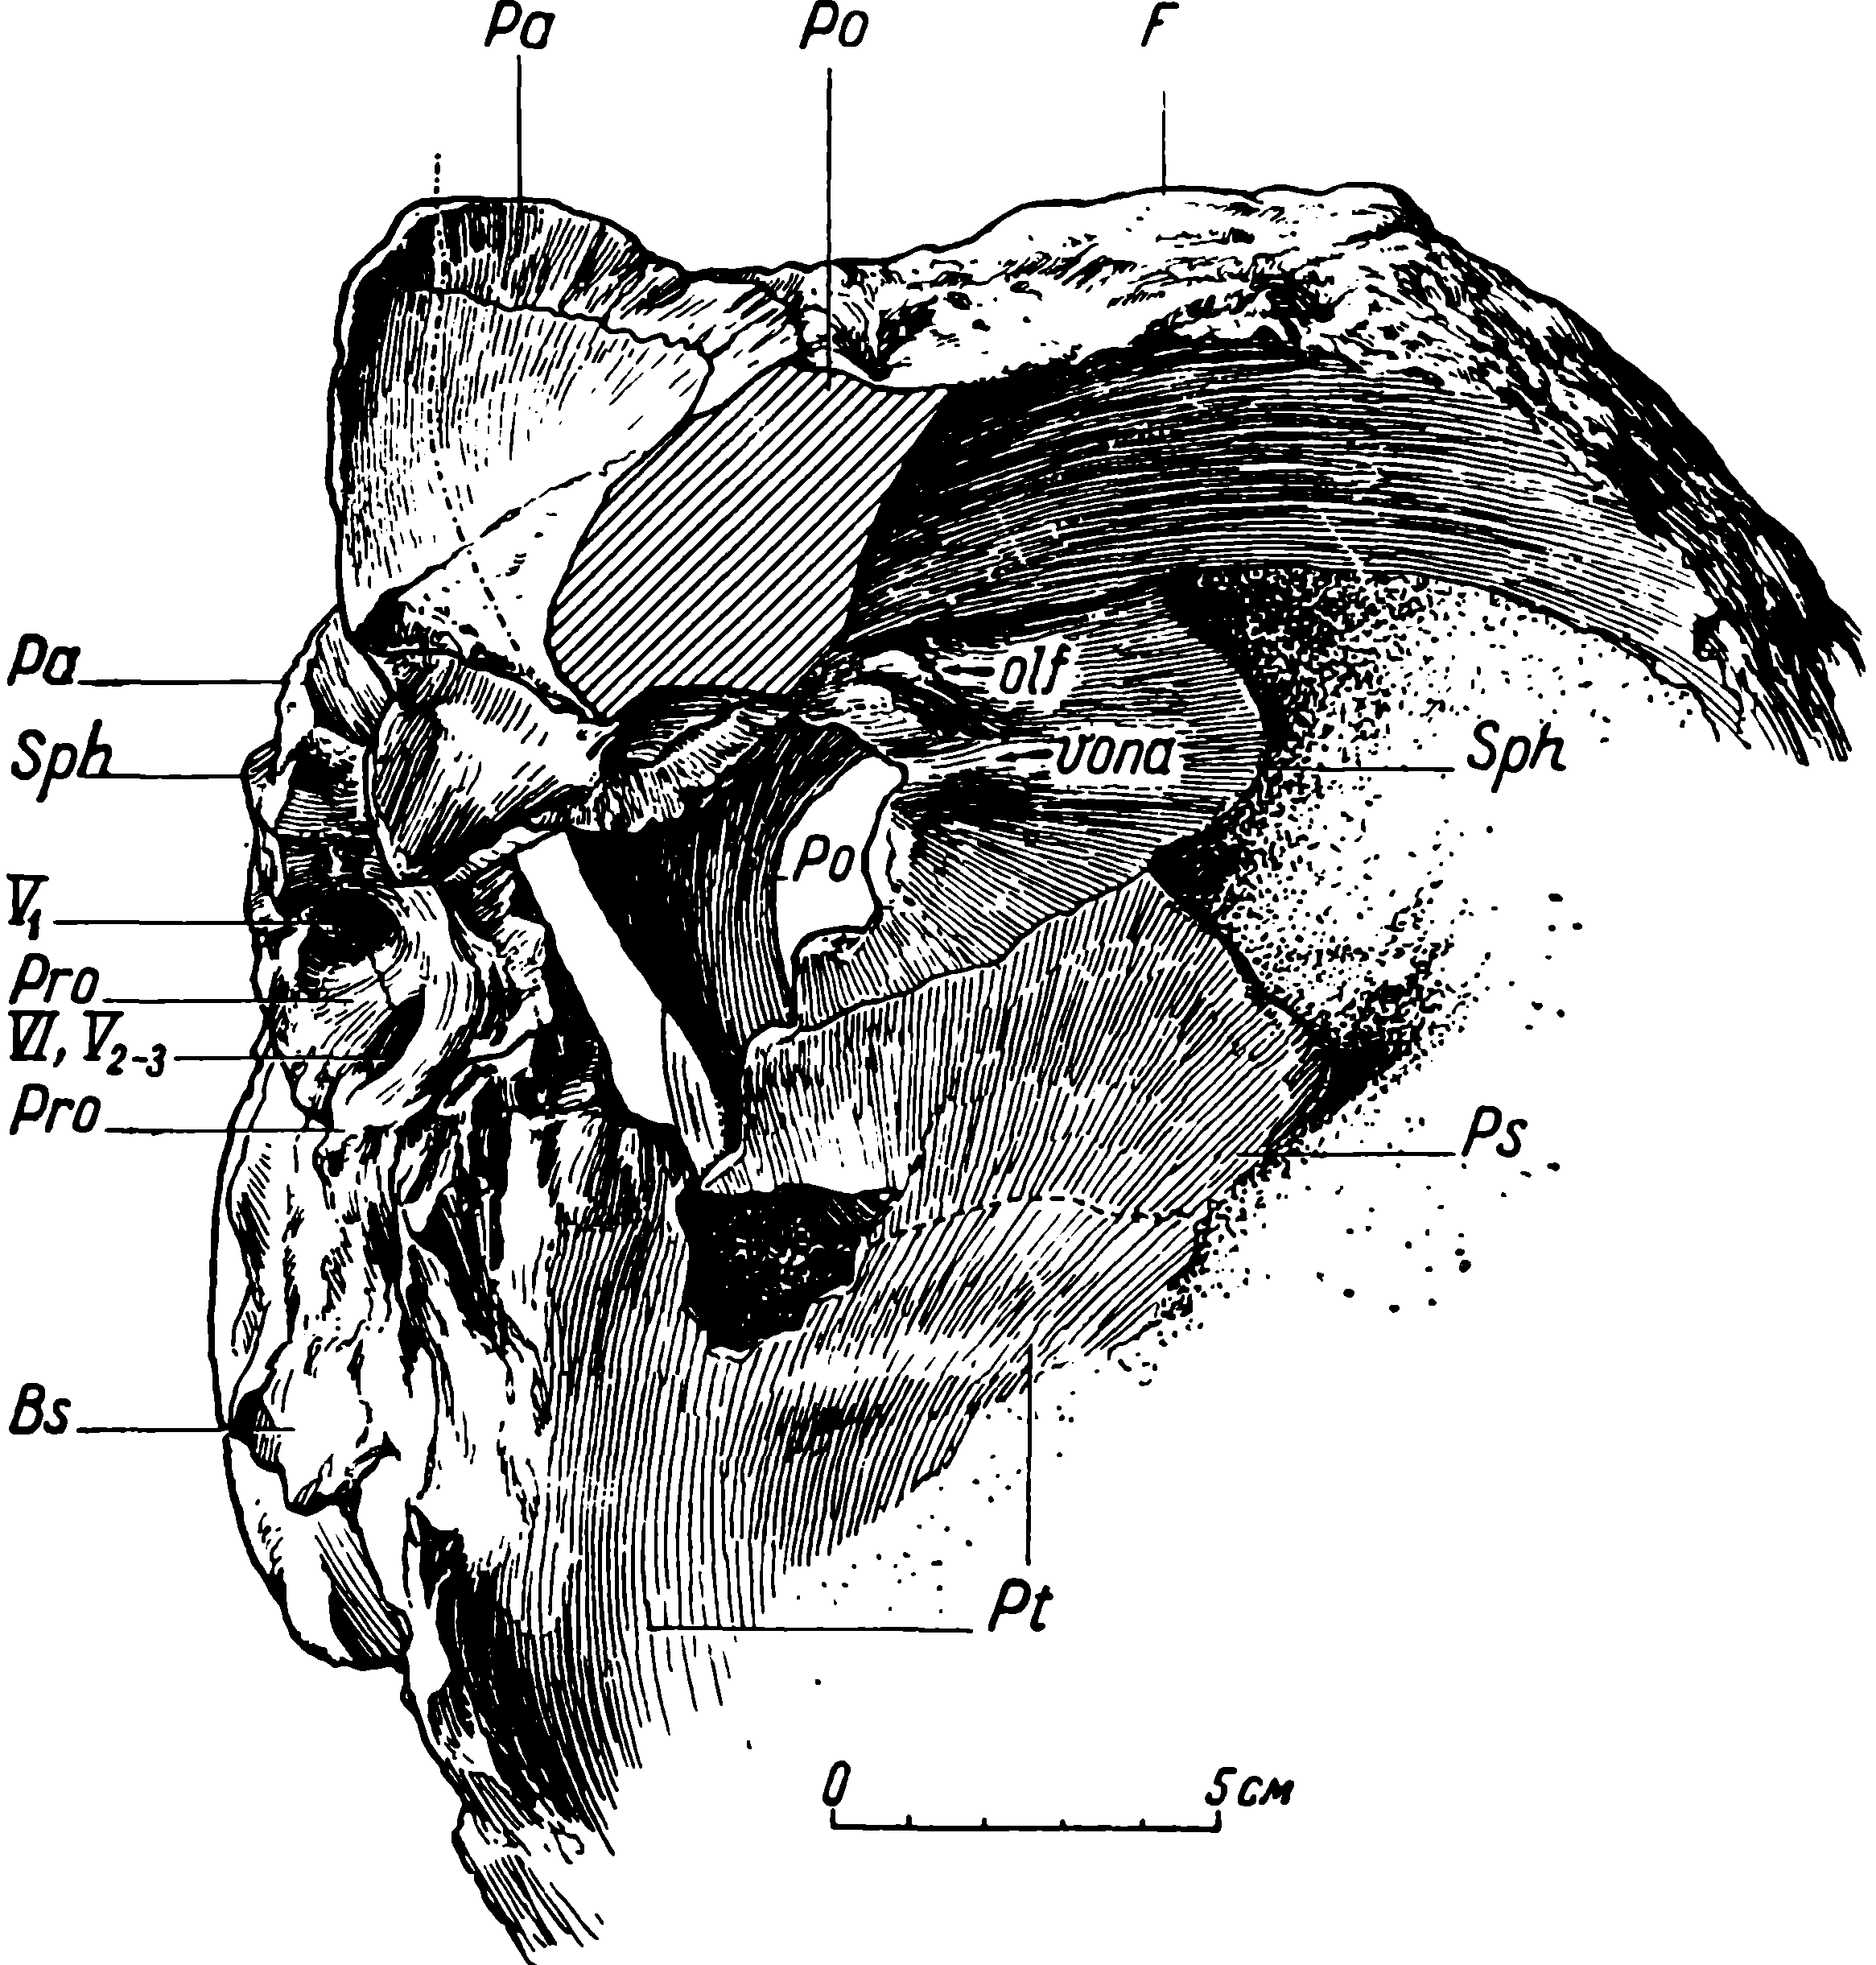 Рис. 12. Deuterosaurus biarmicus Eichw. Мозговая коробка черепа ЛГМ/ЧМП № 2 как сохранилась, сбоку (справа) и отчасти сверху. Посторбитальная перегородка правой стороны мысленно убрана (разрез заштрихован). Точками показаны заполненные породой участки. Штрих пунктир — передняя сторона пинеального капала. Обозначения см. рис. 3, 6, 9, 10